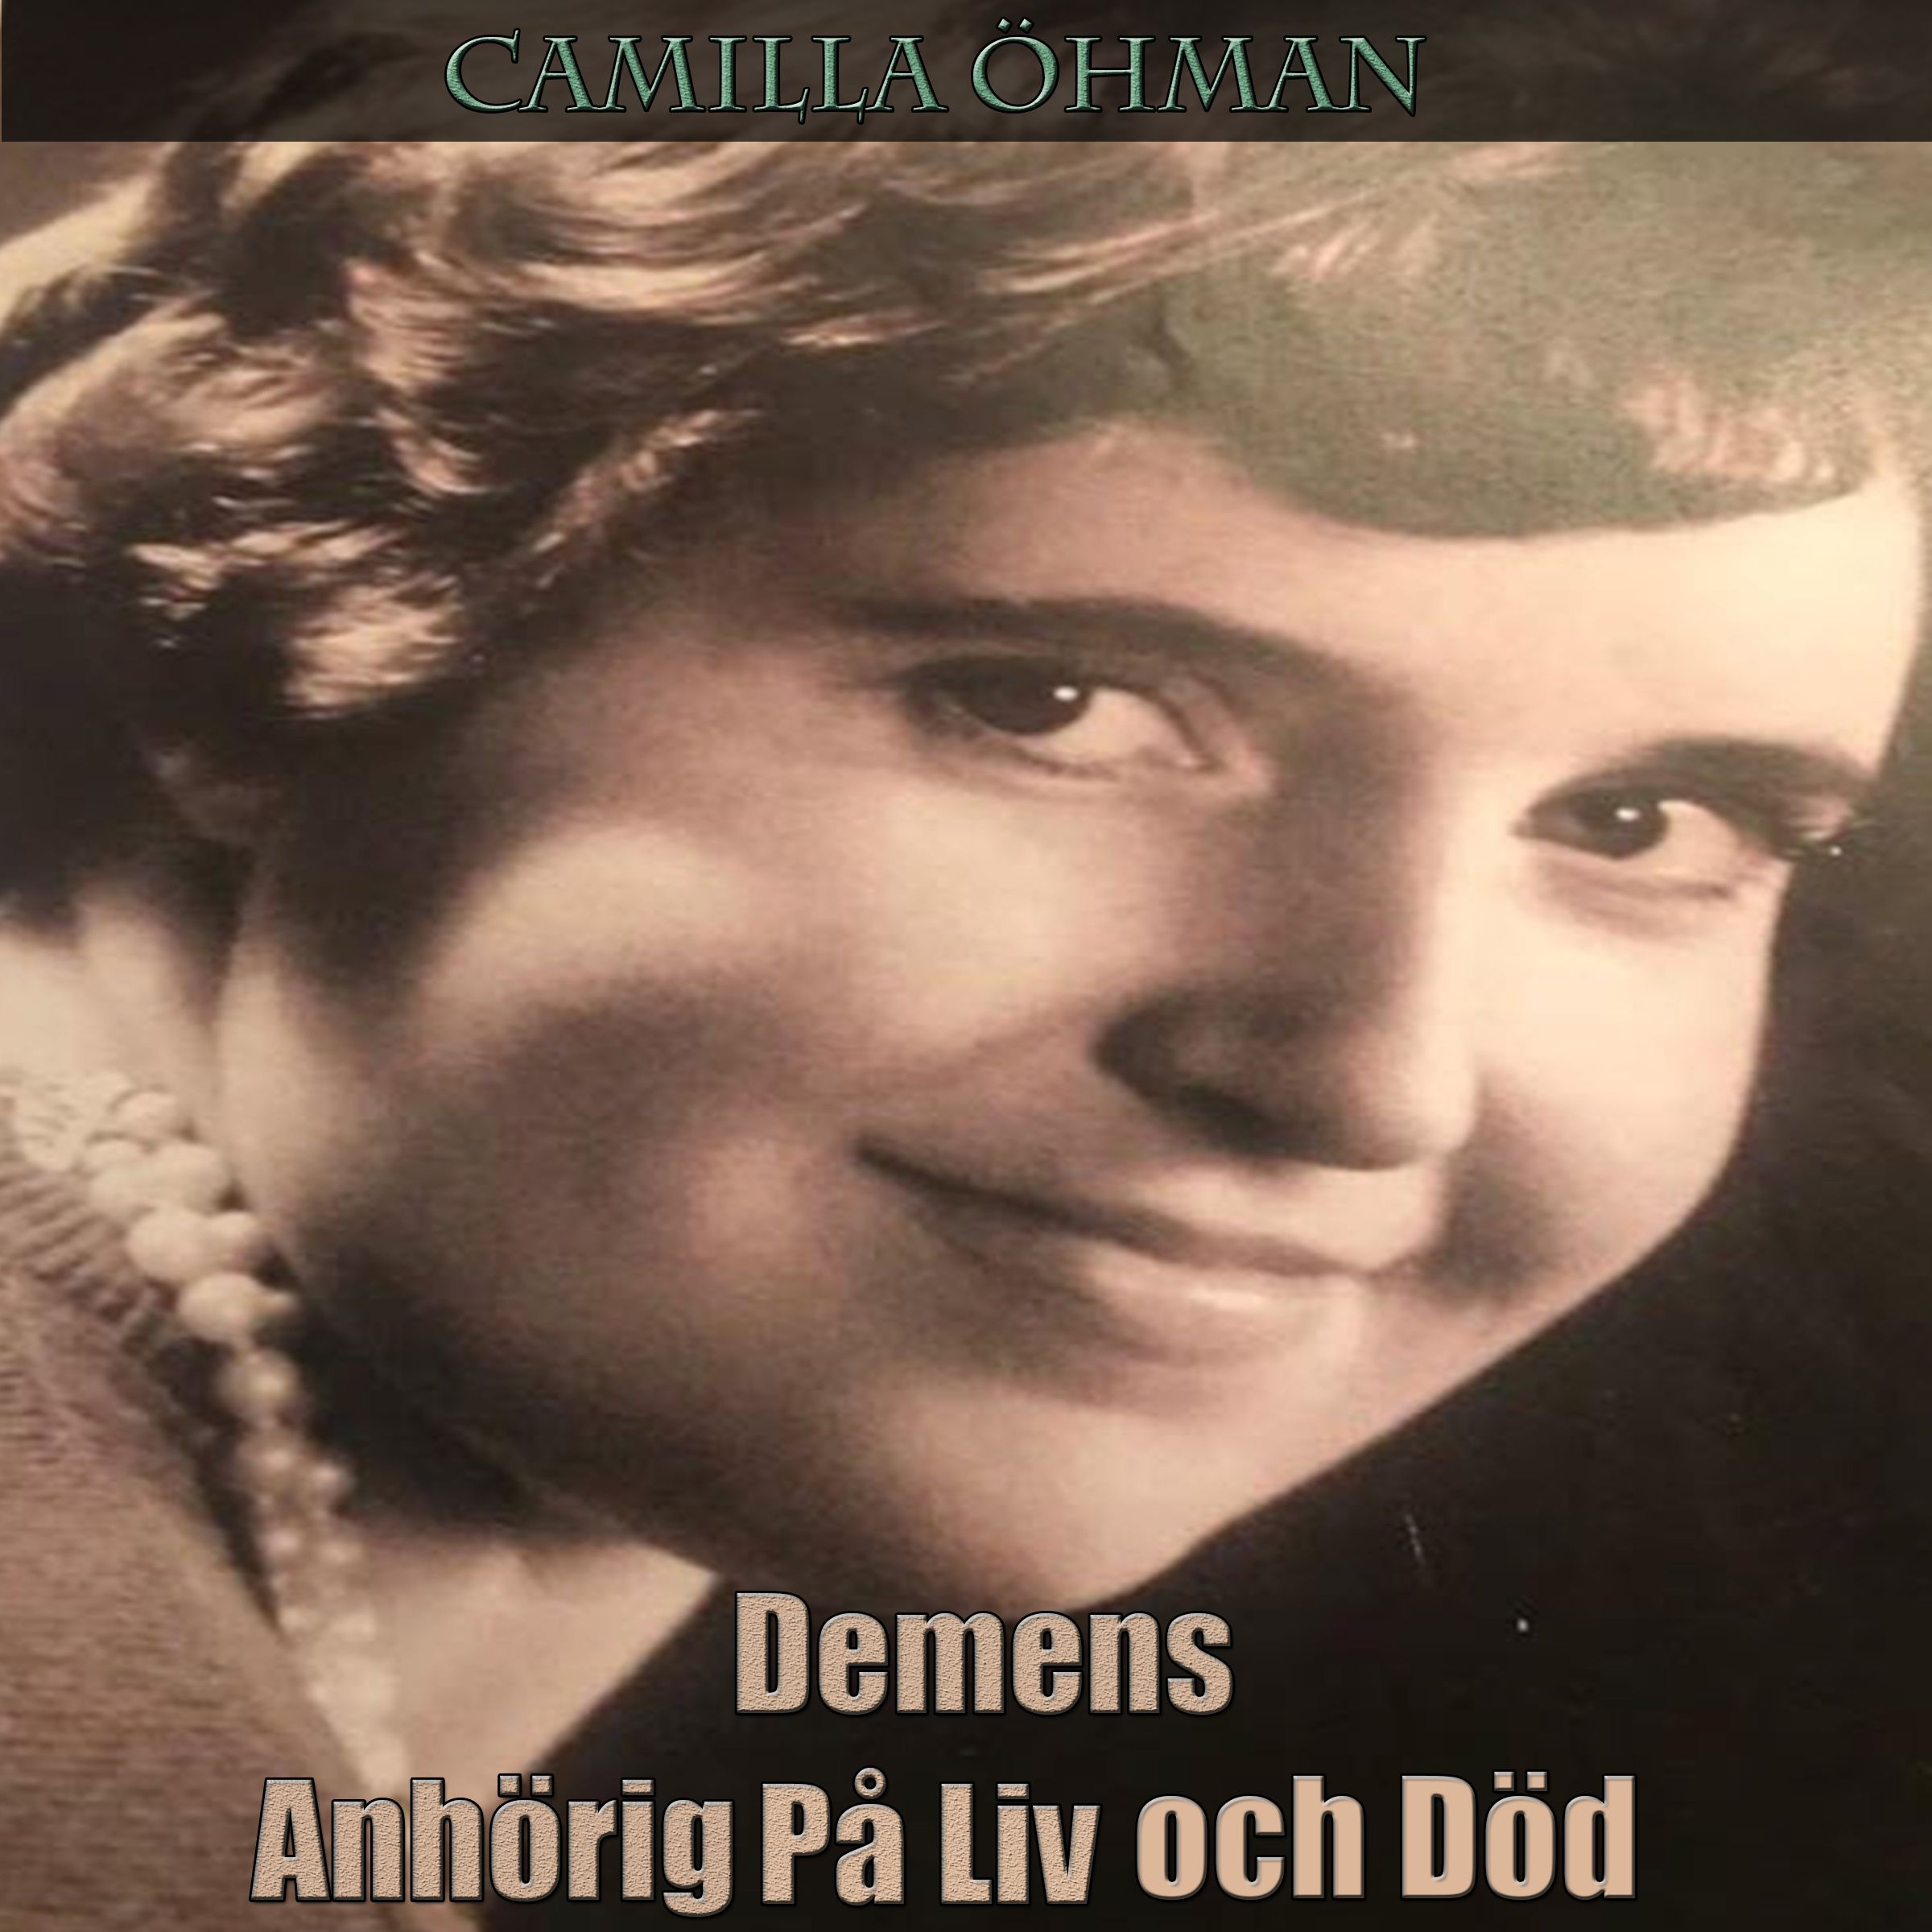 Demens - Anhörig På Liv och Död, ljudbok av Camilla Öhman